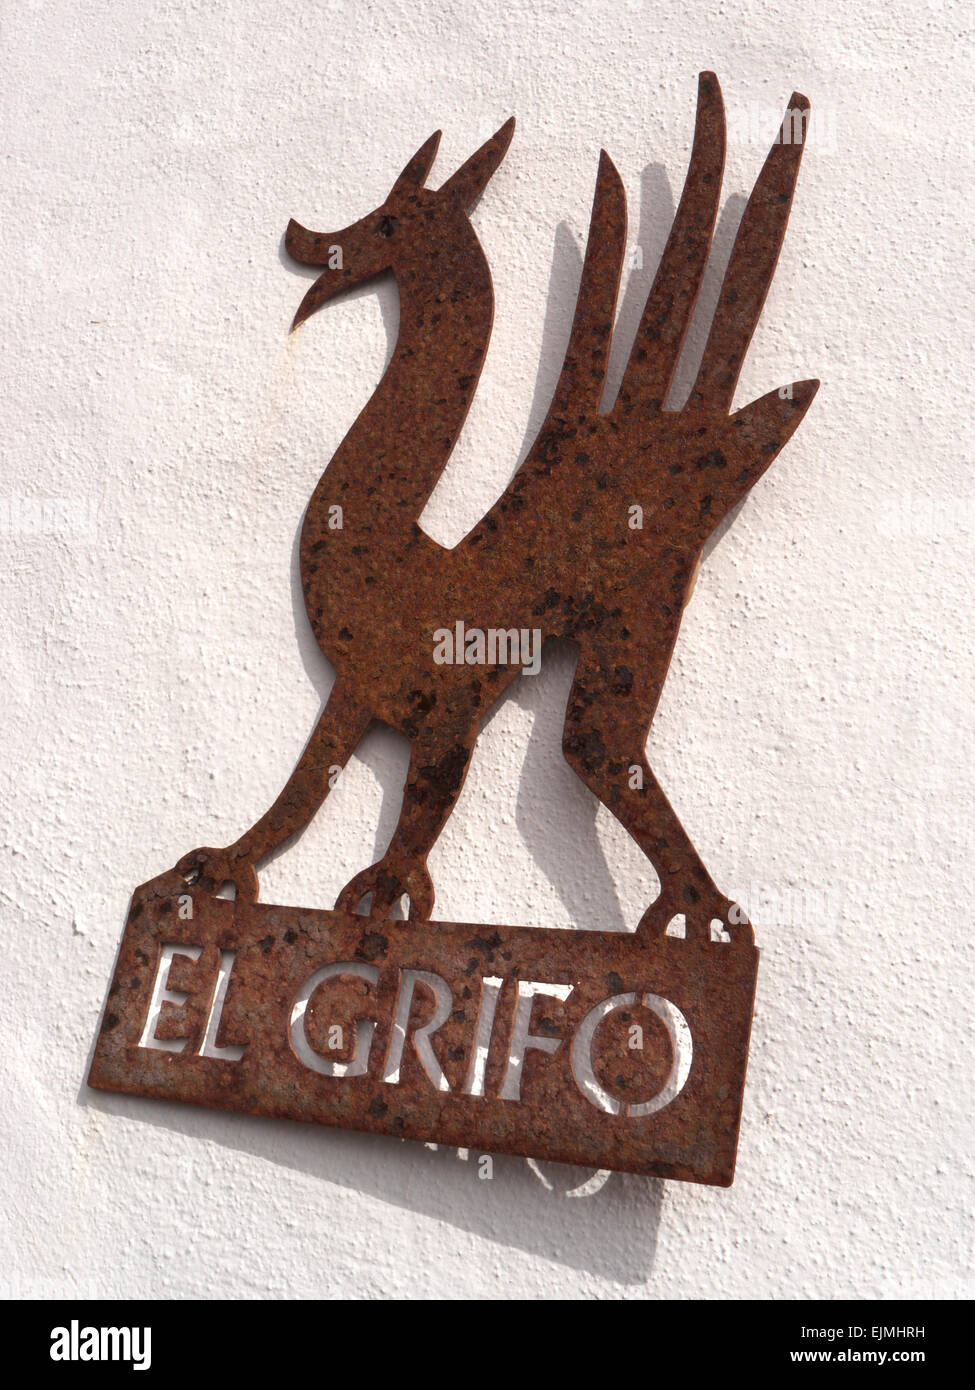 EL GRIFO rustikale Metall-Plakette auf Bodega wand Werbung Lanzarote Wein  Produzenten El Grifo Kanarische Inseln Spanien renommierten Stockfotografie  - Alamy